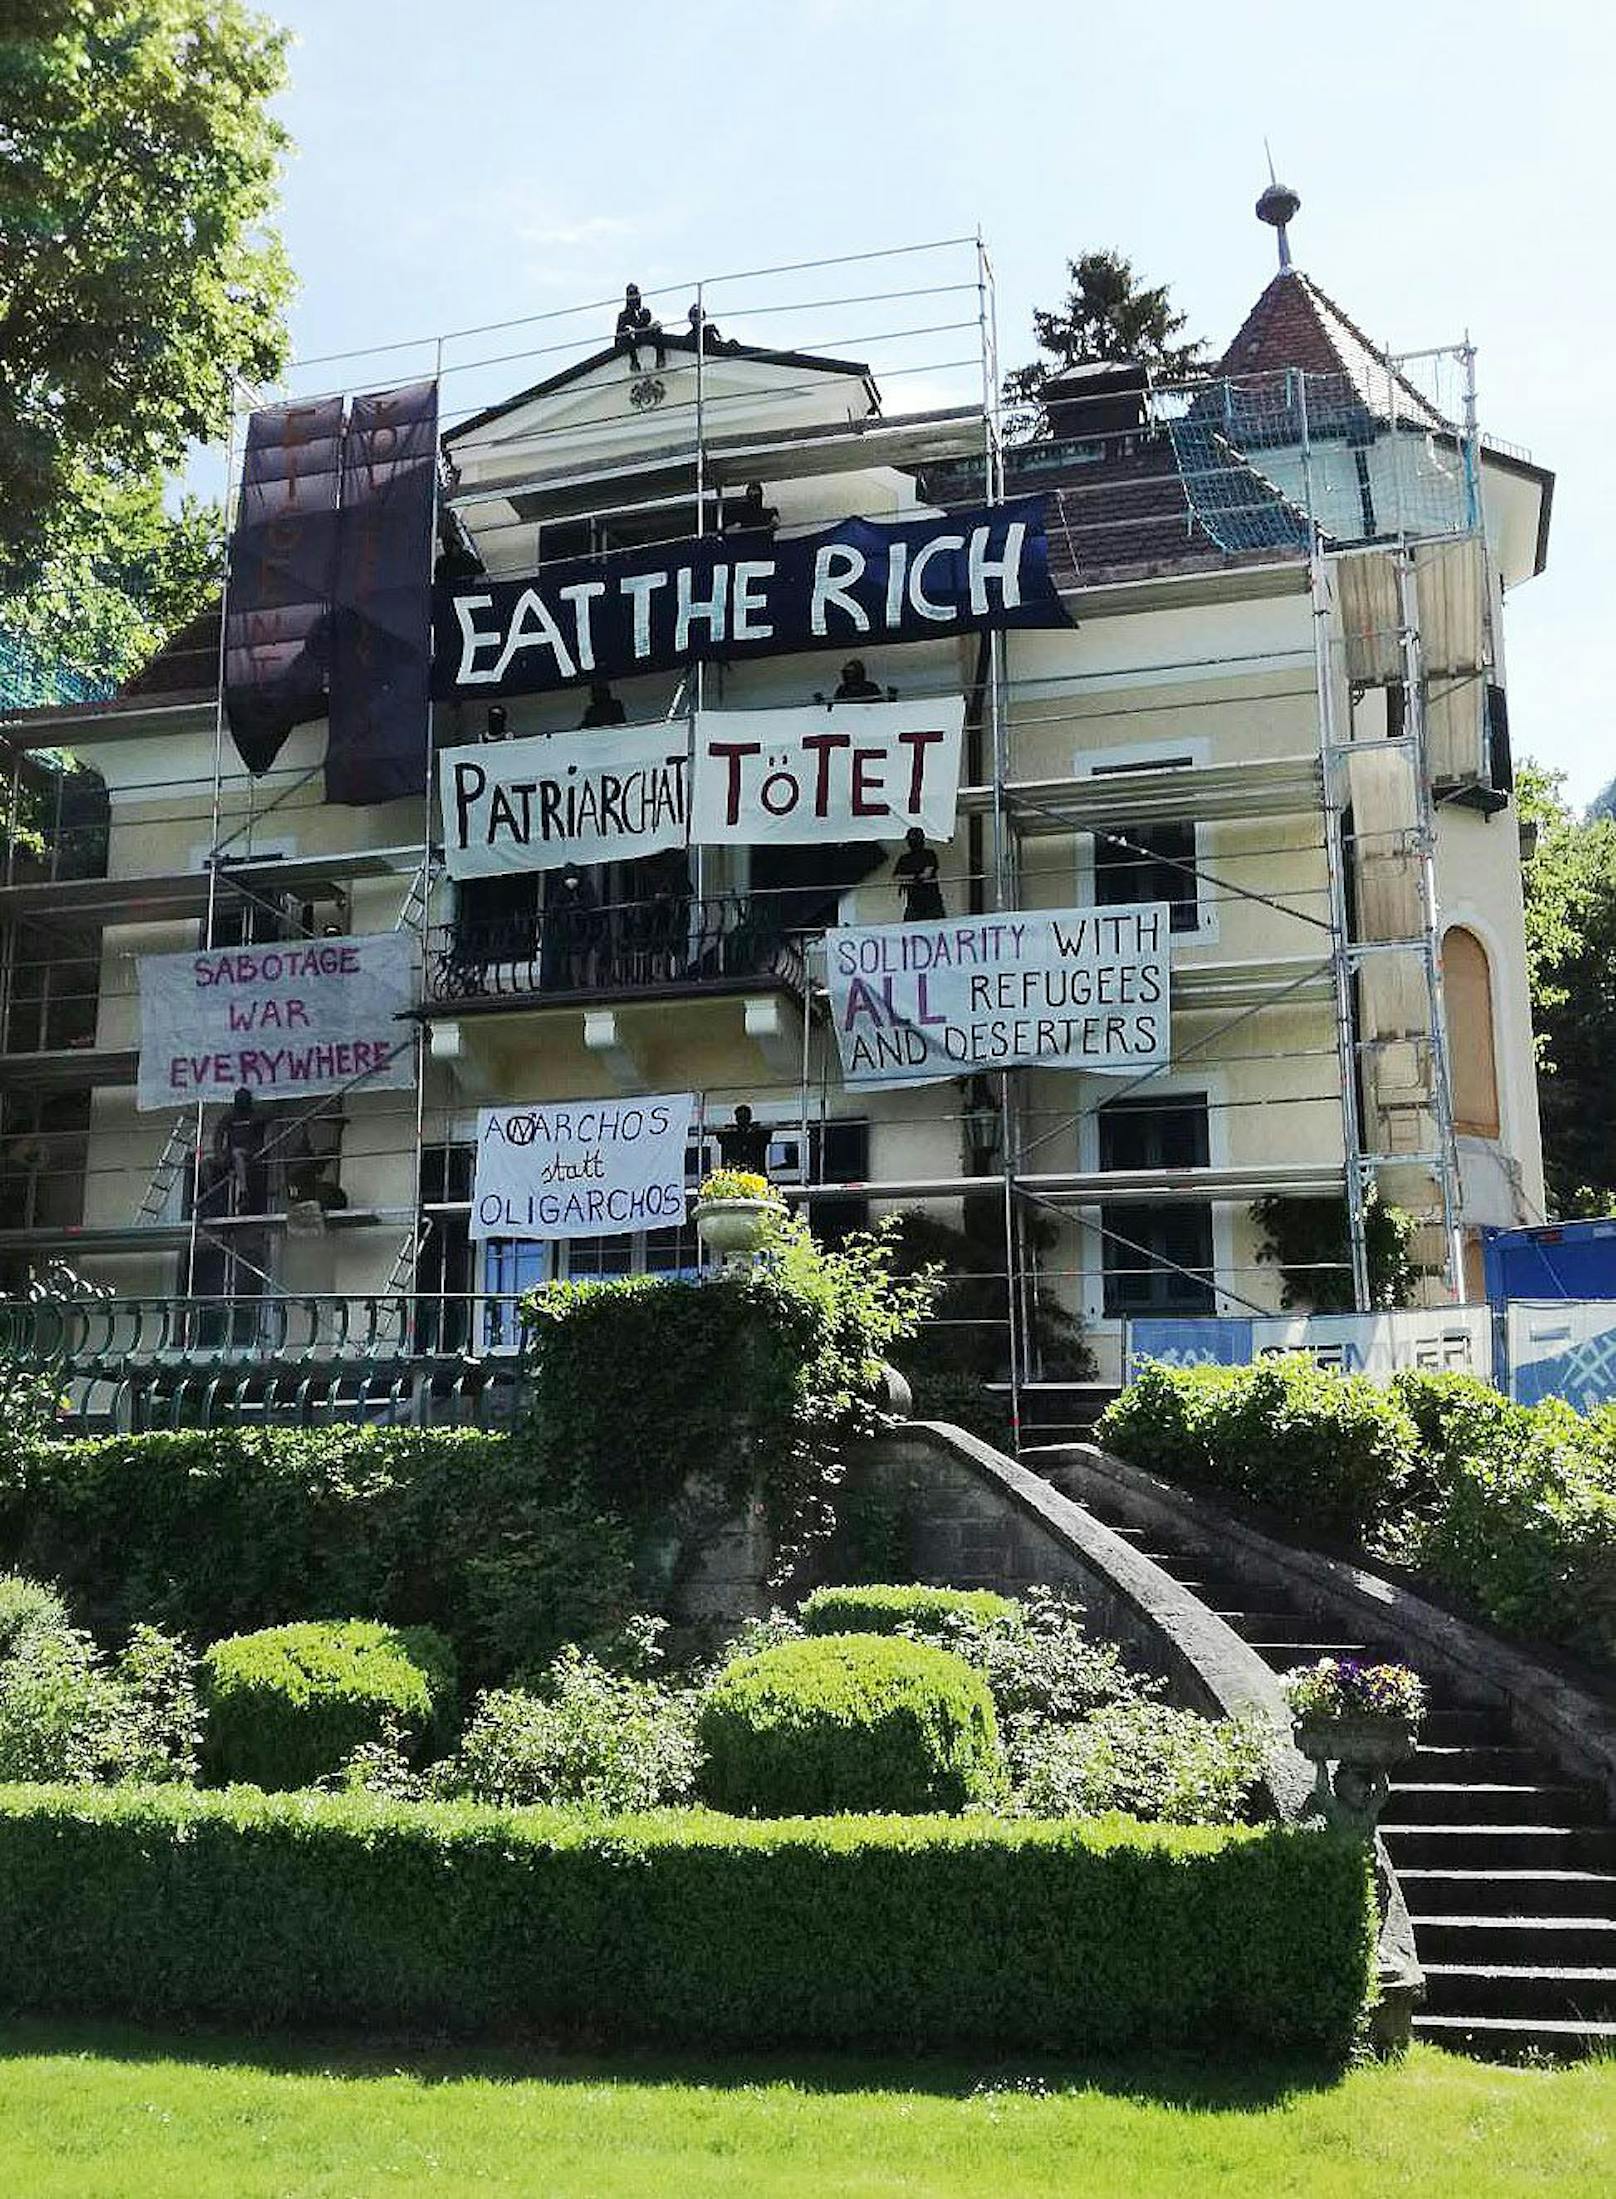 Aktivisten besetzten angebliche Oligarchen-Luxusvilla